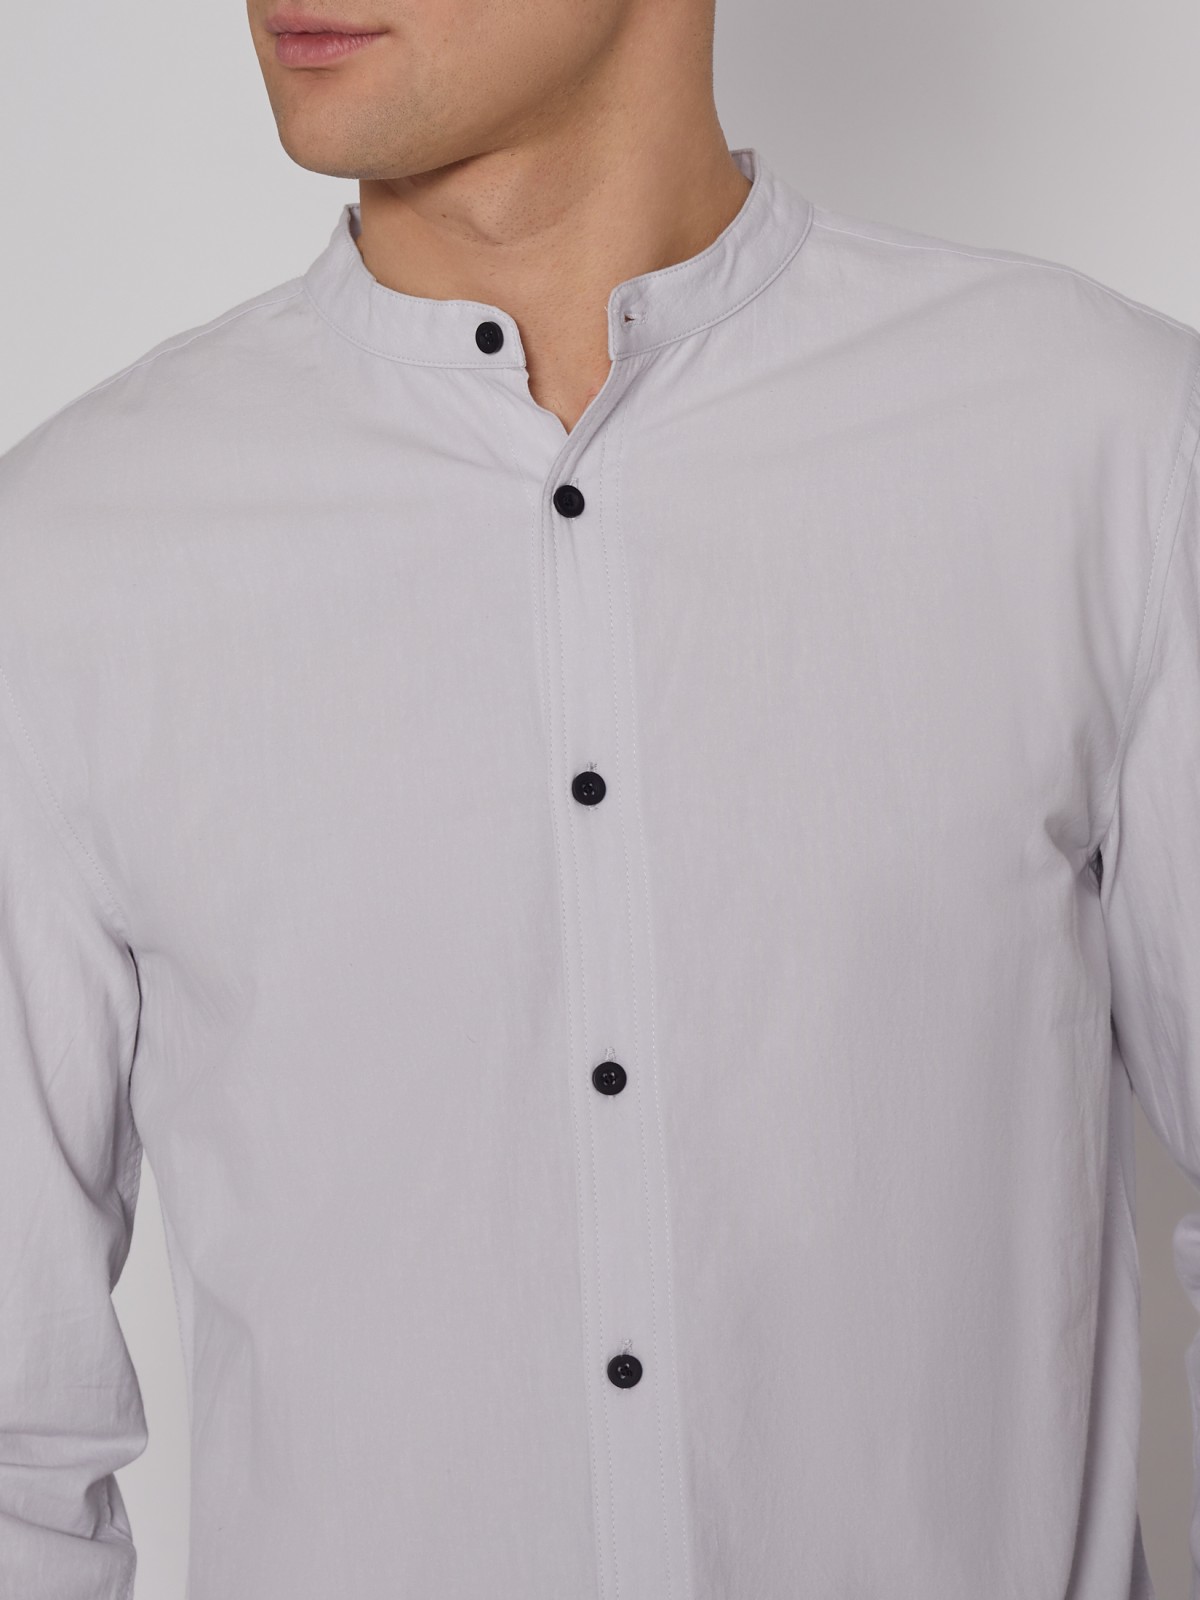 Рубашка с воротником-стойкой zolla 21221217Y031, цвет светло-серый, размер S - фото 4